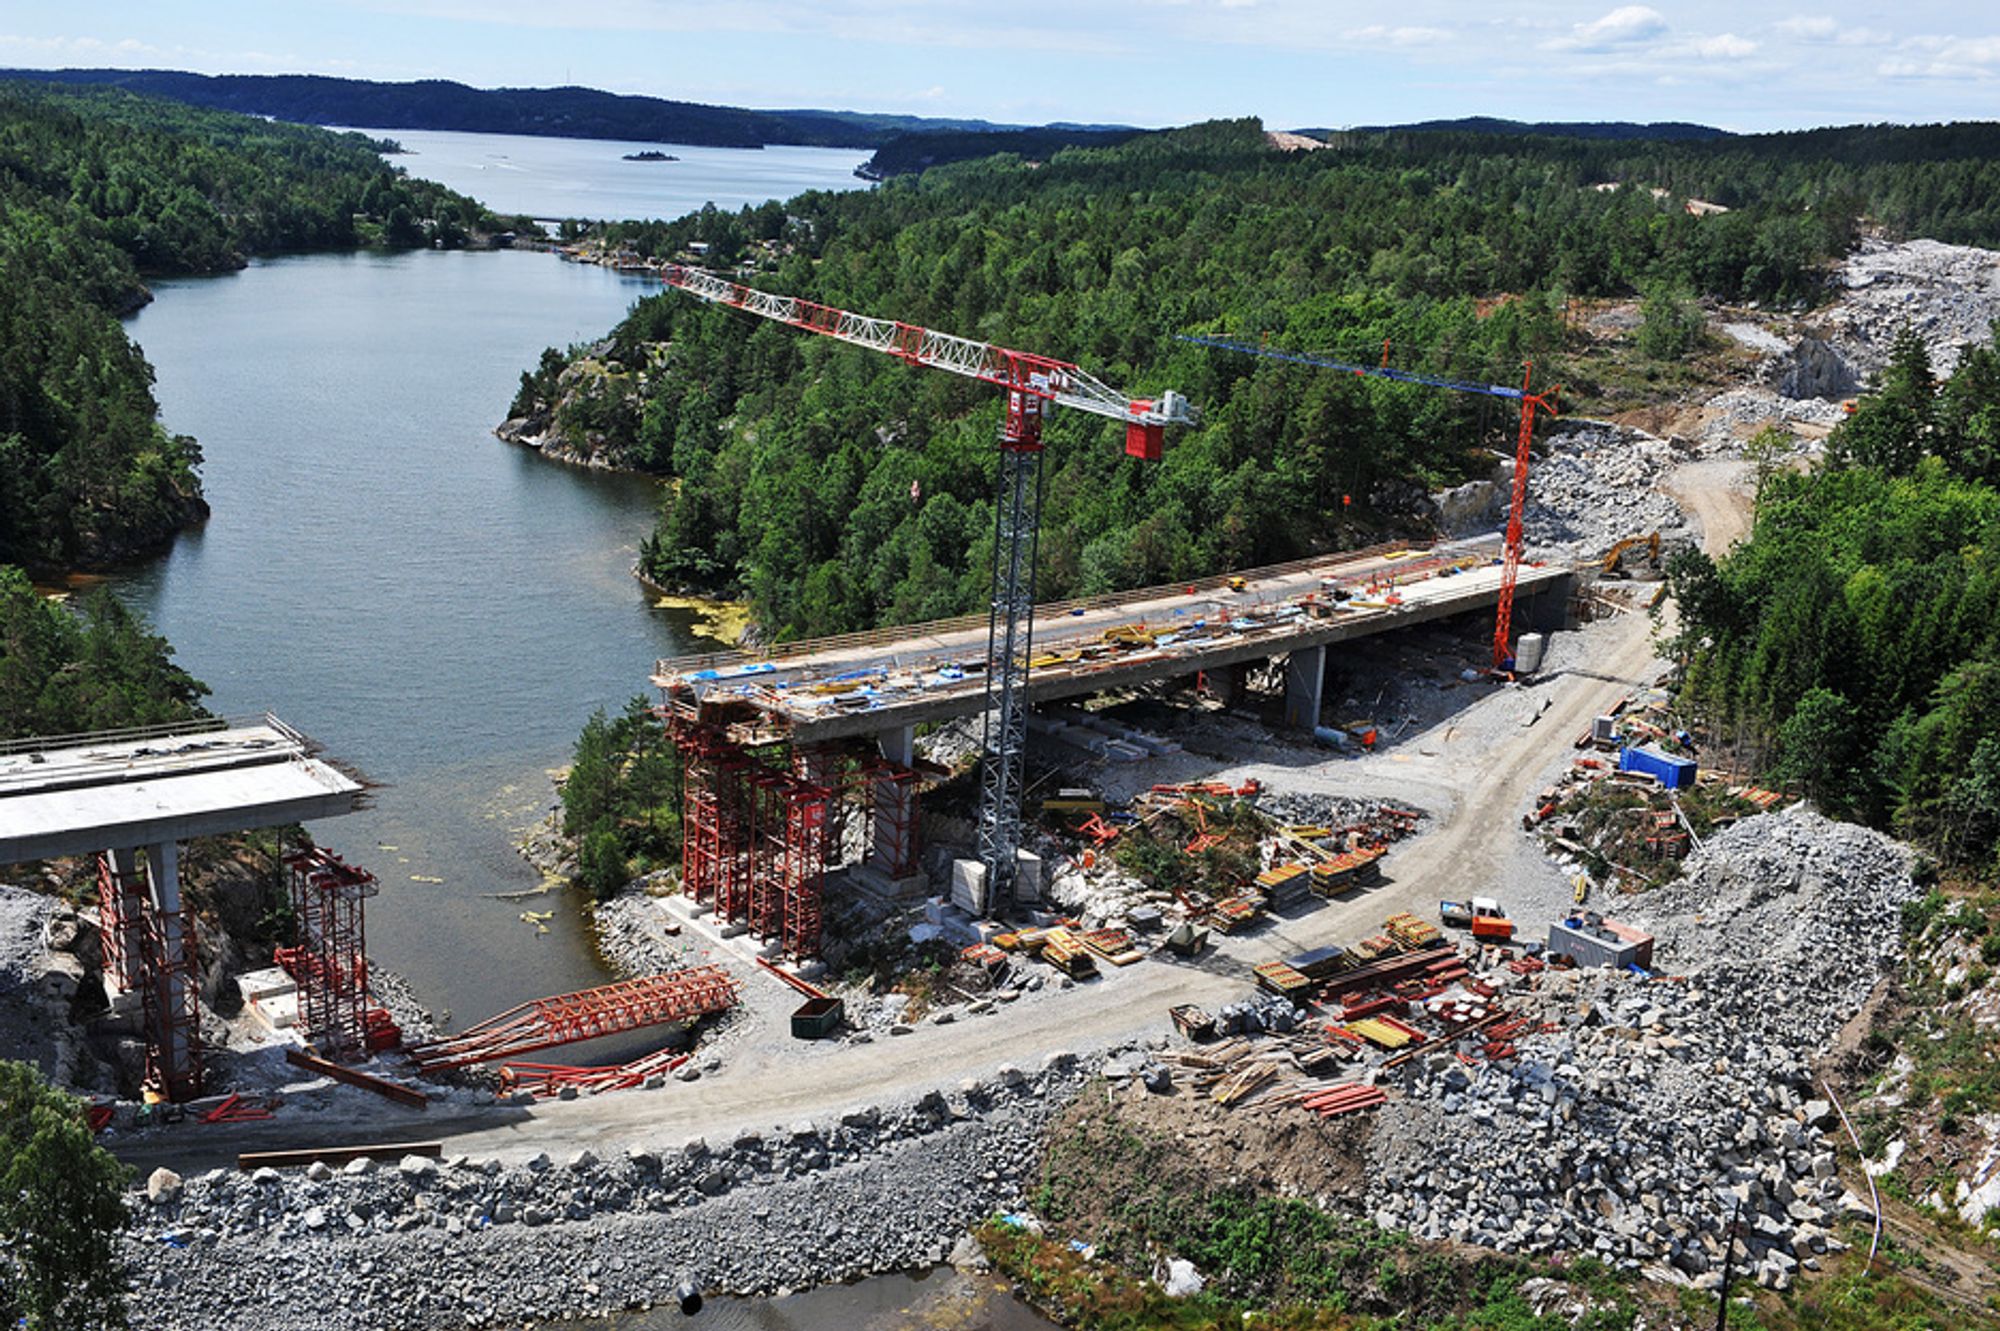 Med en bevilgning på 40 millioner kroner til strekningen Sky - Langangen, kan man komme lenger på målet om kontinuerlig 4-felts vei mellom Oslo og Kristiansand.